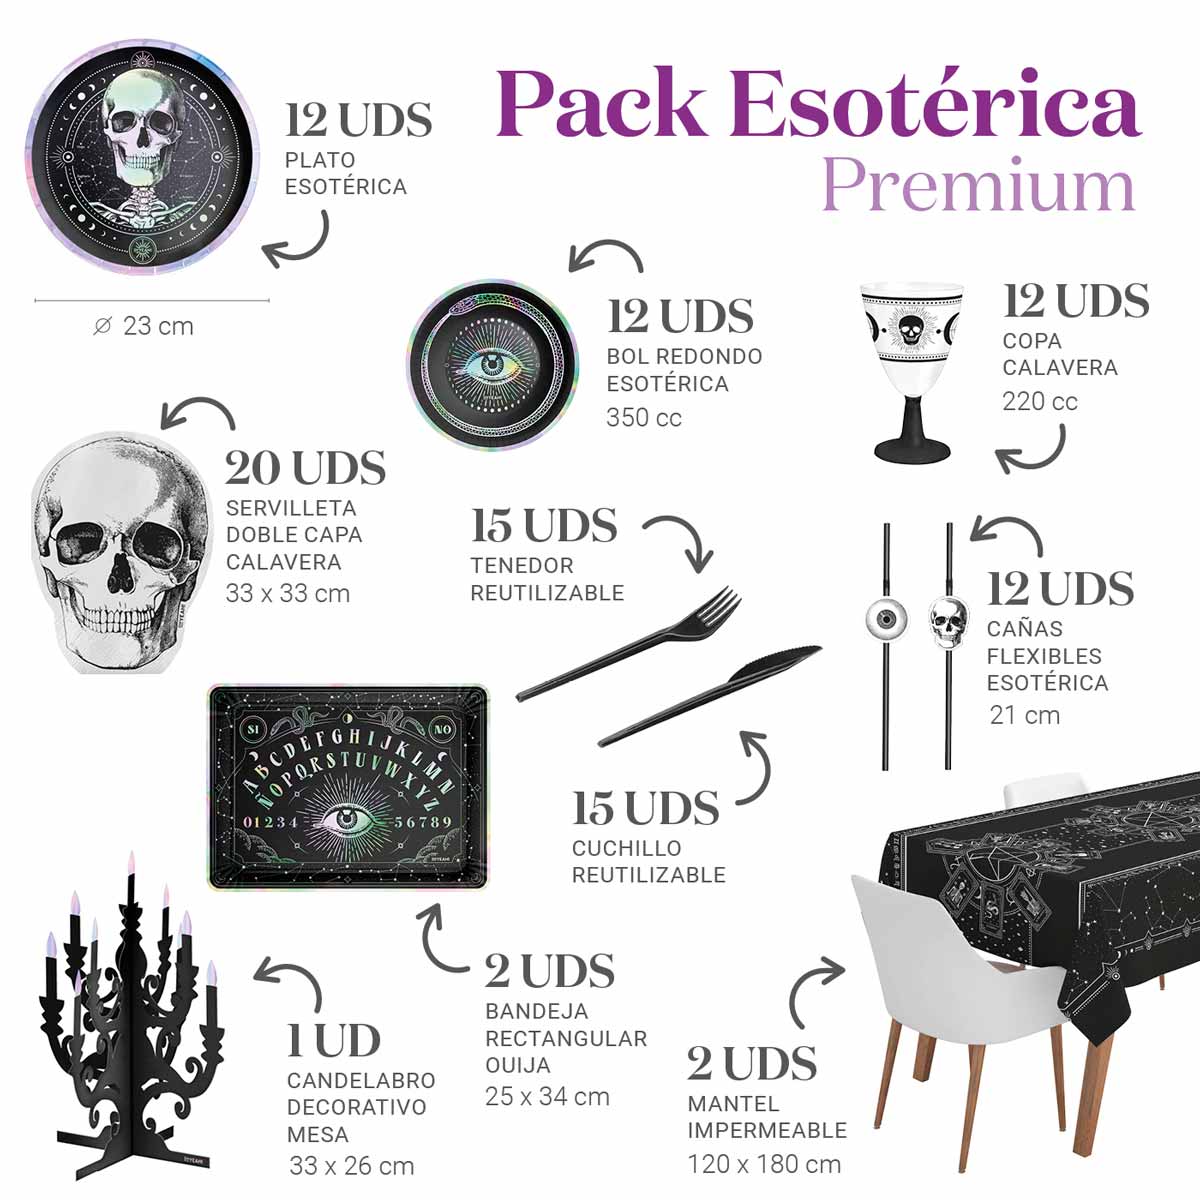 12 people esoteric premium table kit